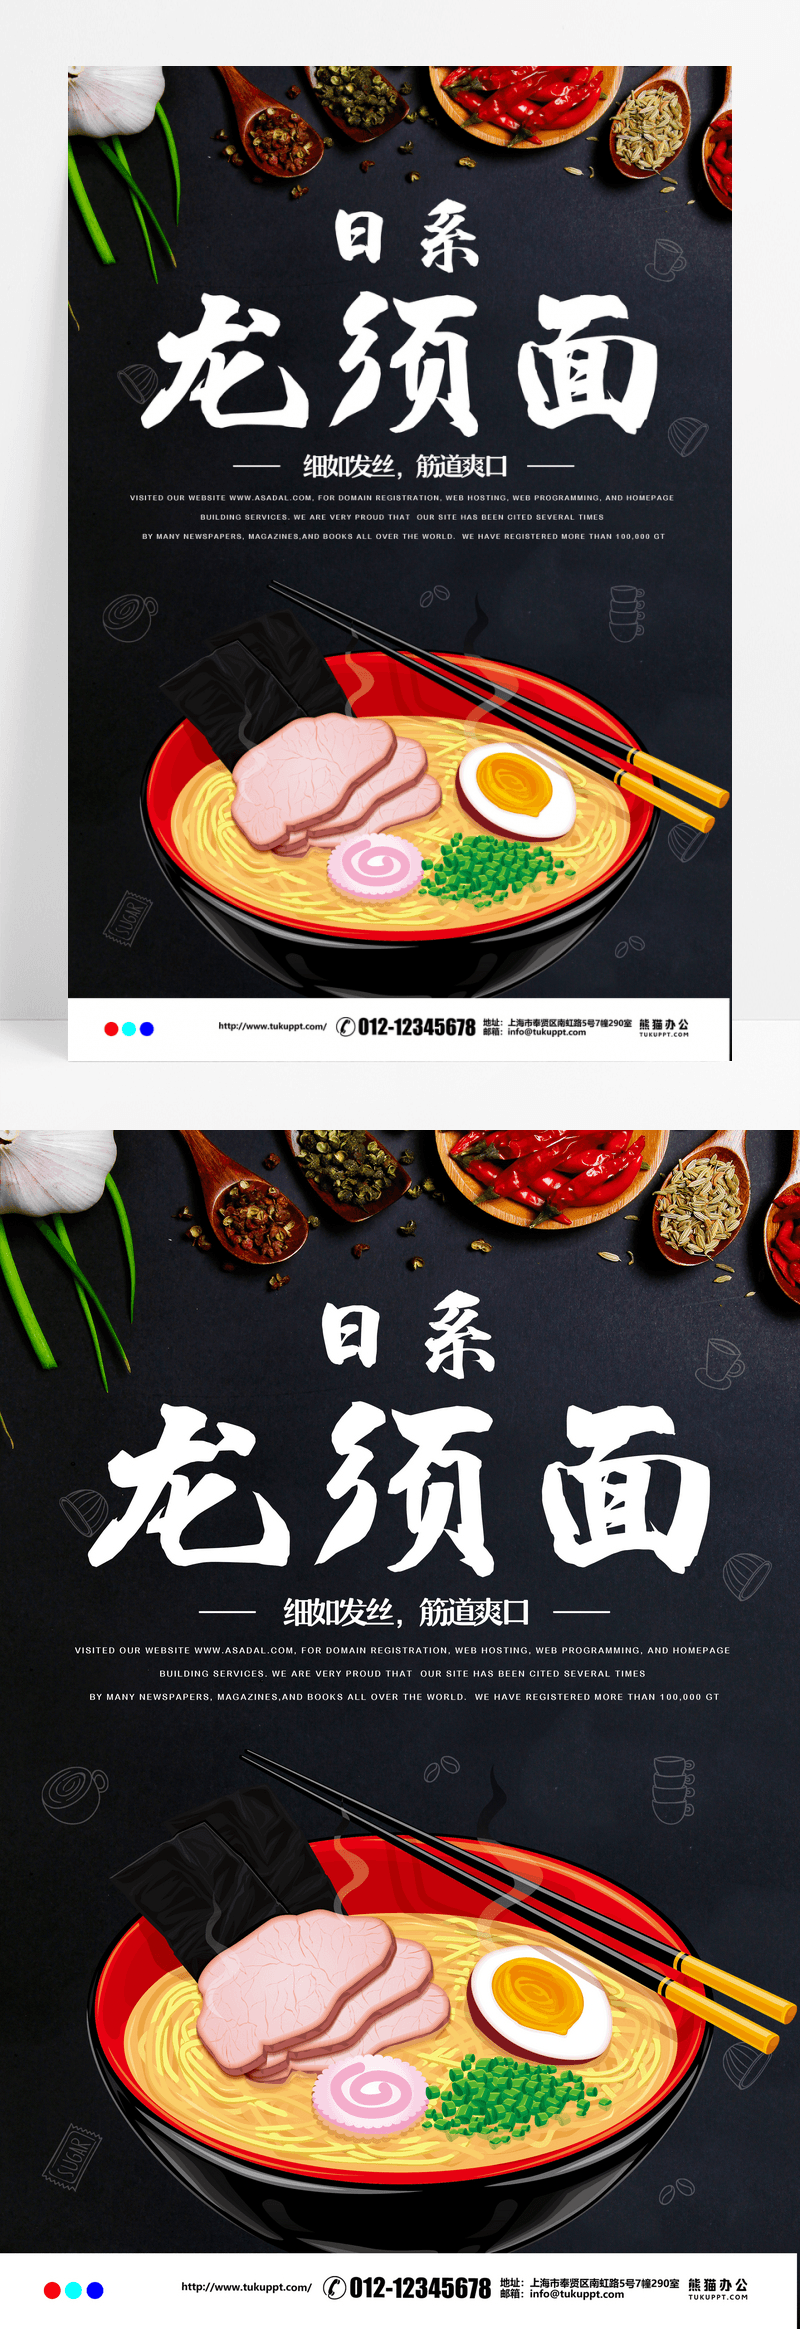 日式拉面龙须面美食餐饮海报